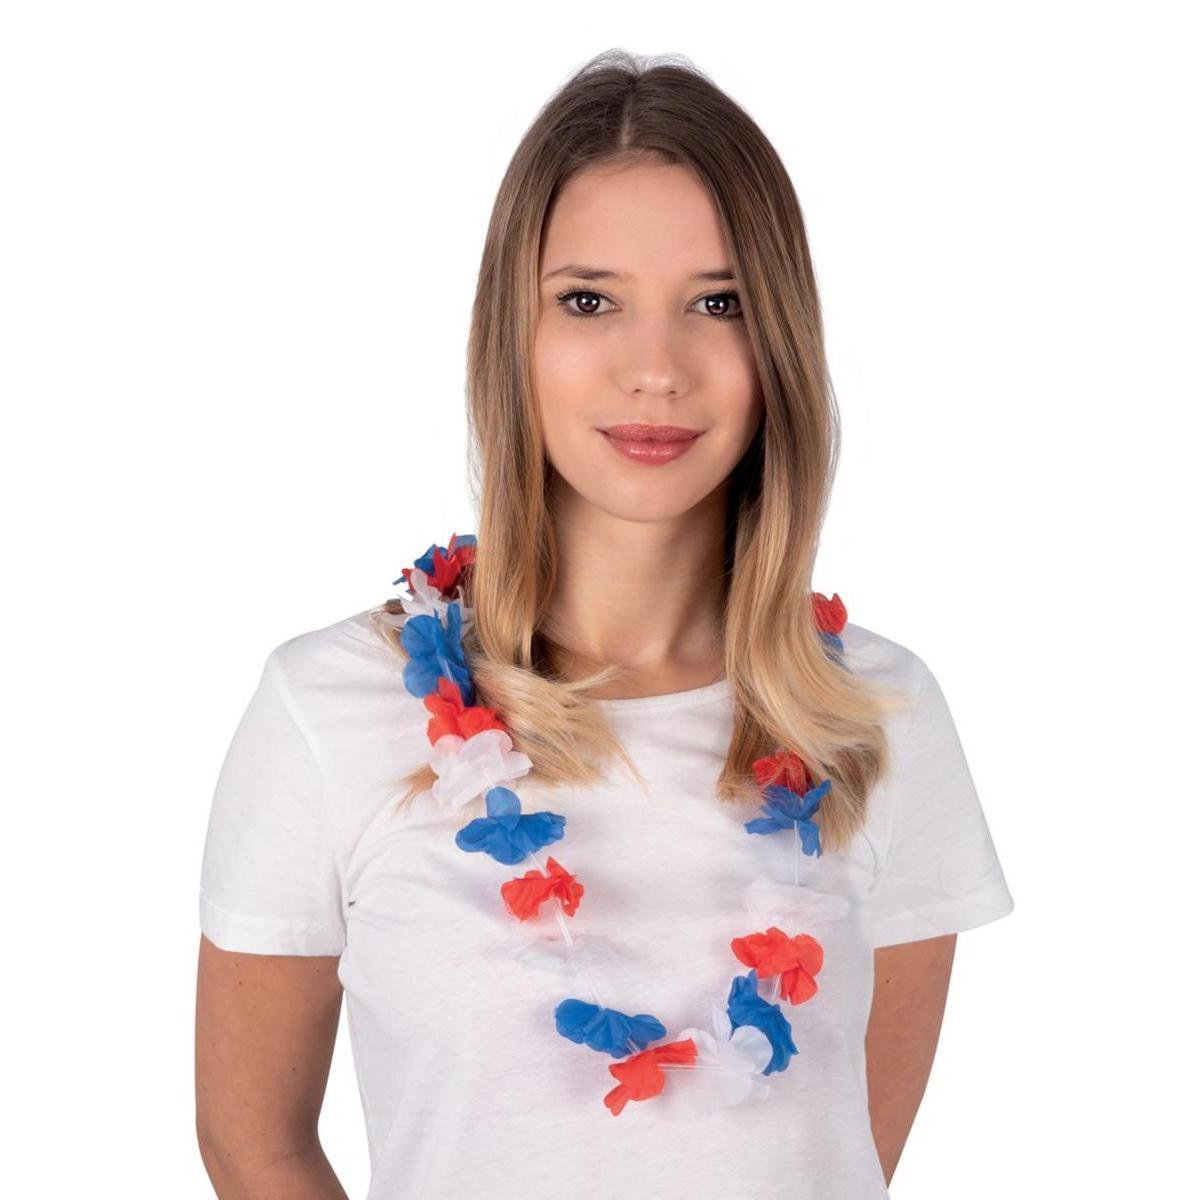 Collier hawaïen supporter équipe de France - Polyester - Ø 6 x 50 cm - Bleu, blanc, rouge